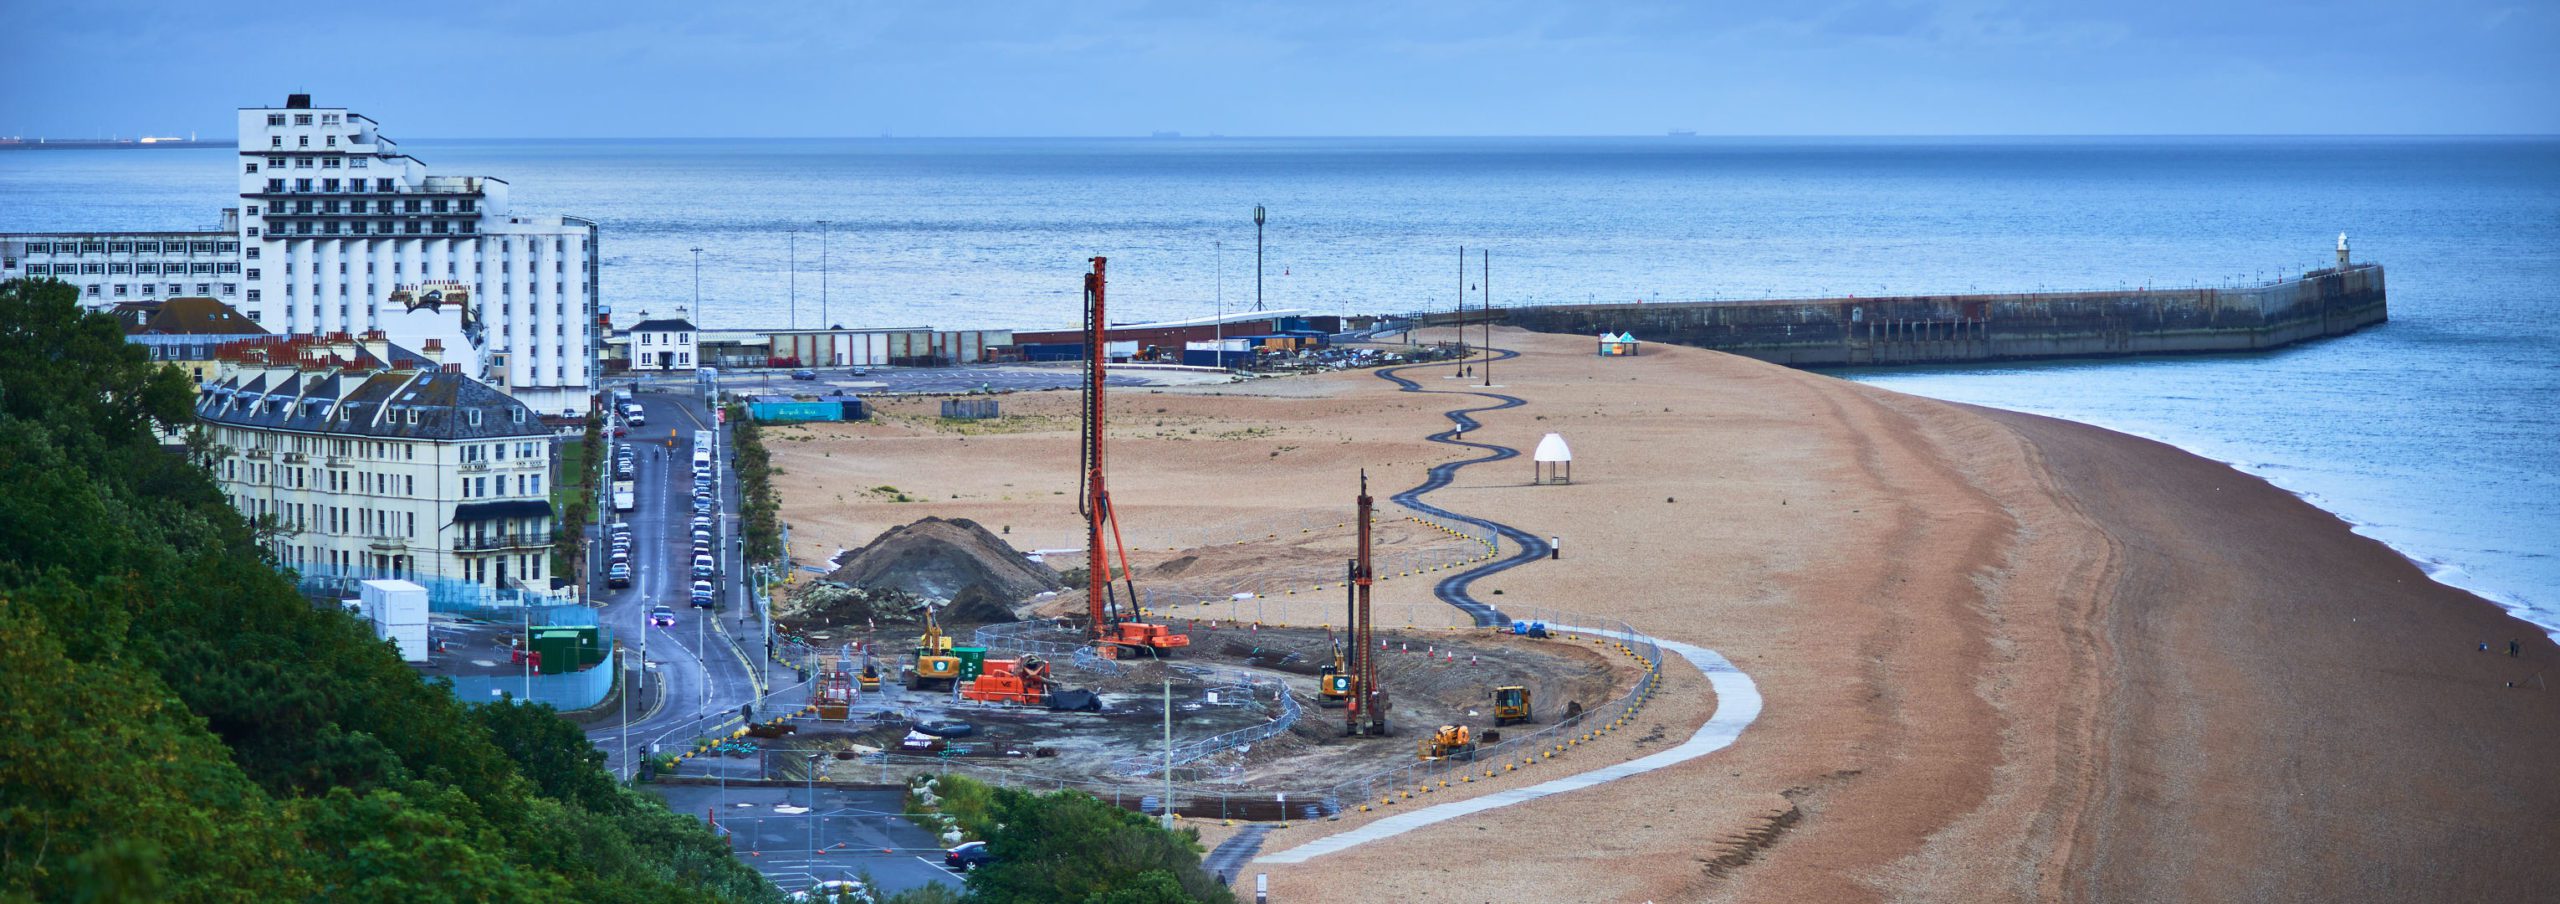 Folkestone Harbour Seafront Development June 2020